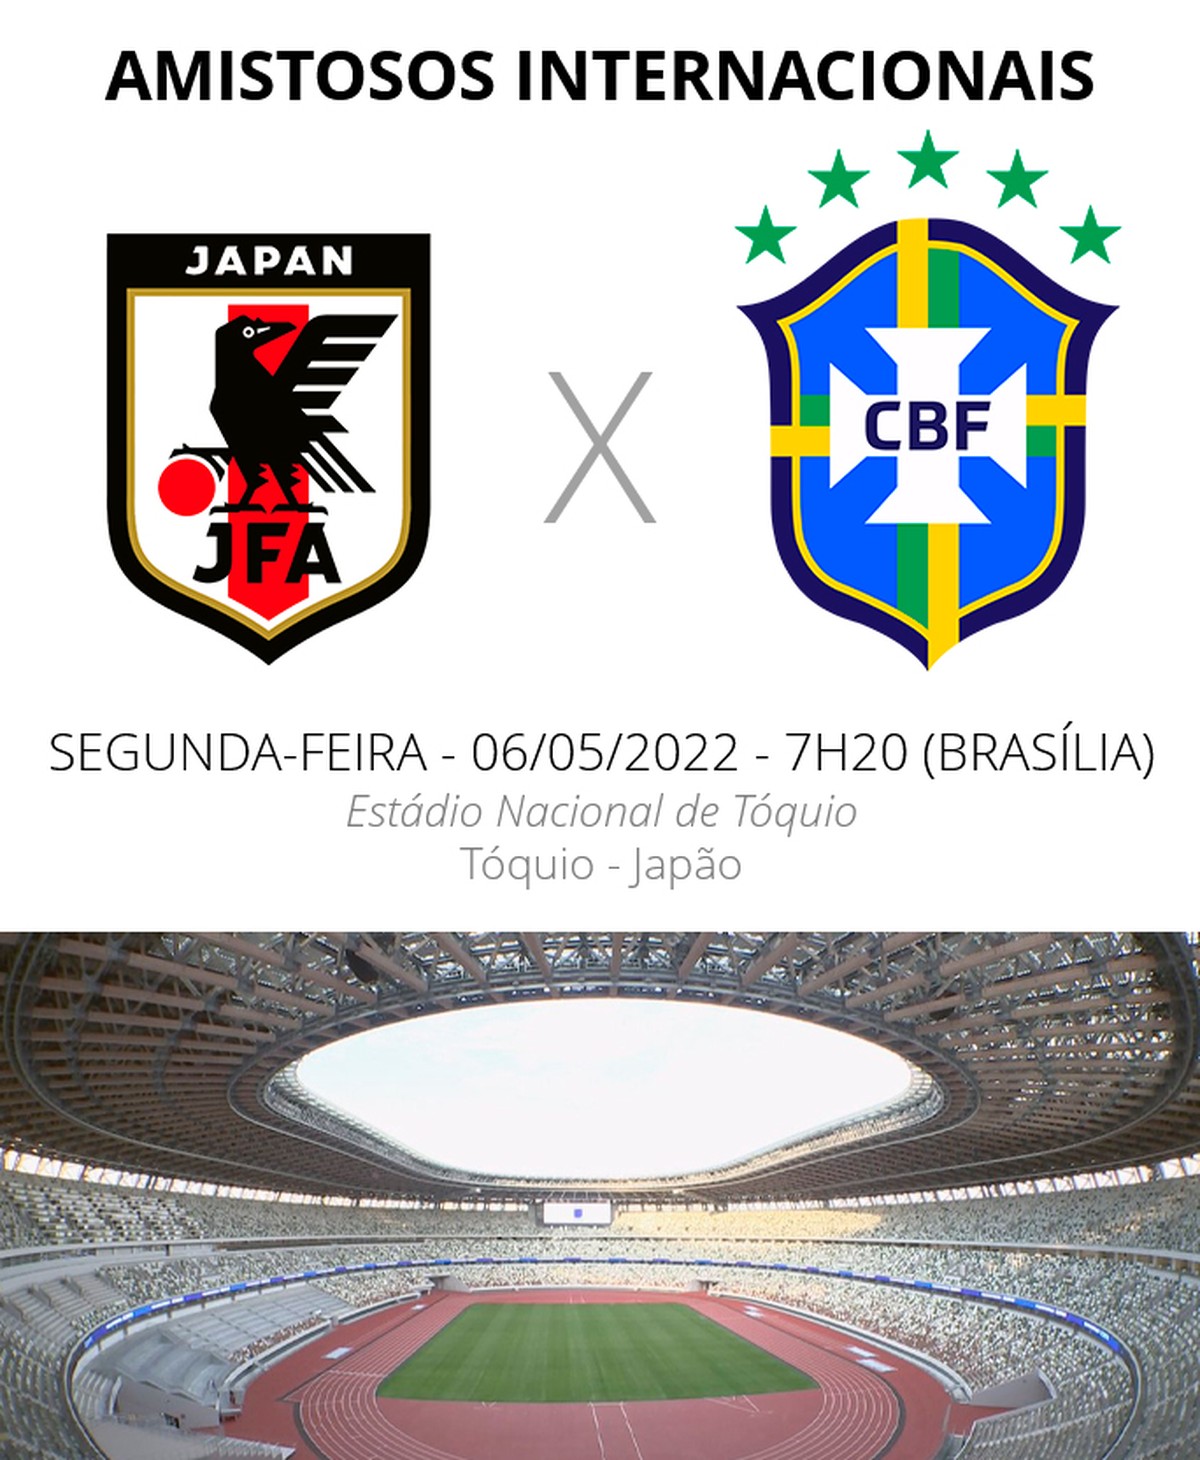 Quanto ficou o jogo do Brasil contra o Japão?